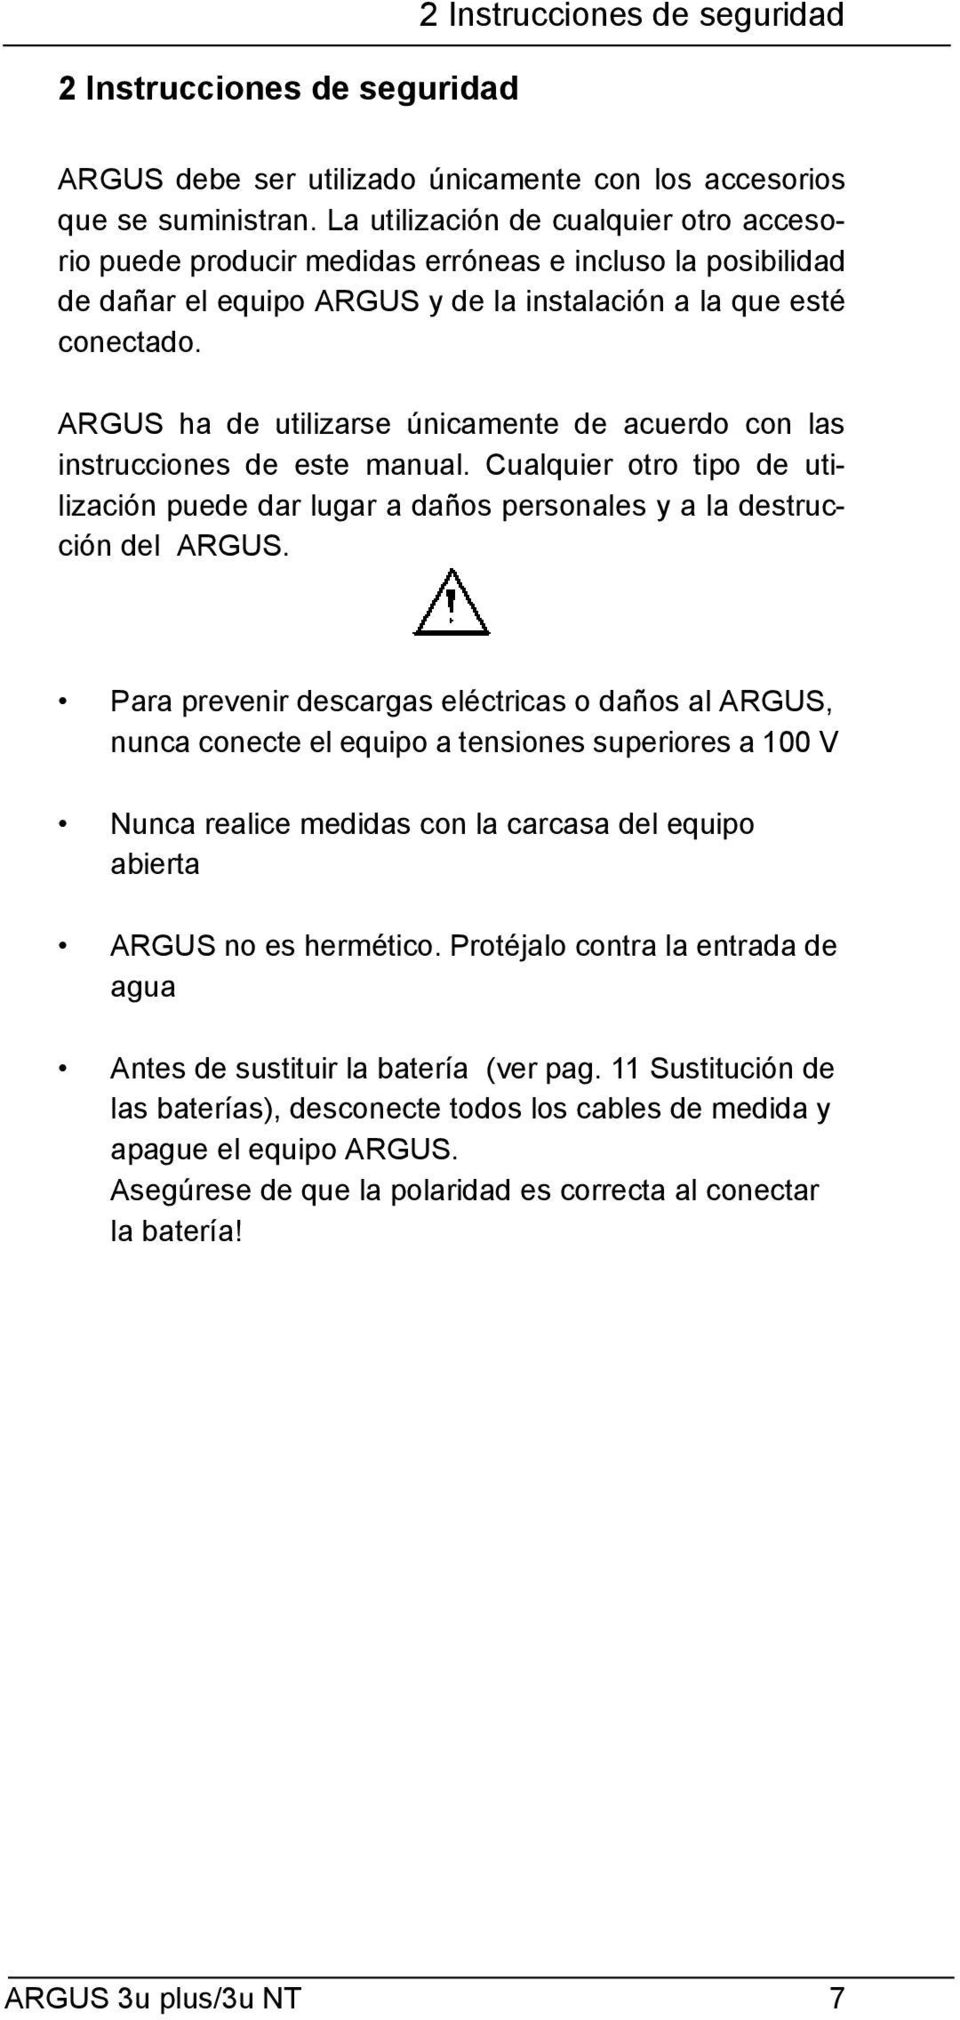 ARGUS ha de utilizarse únicamente de acuerdo con las instrucciones de este manual. Cualquier otro tipo de utilización puede dar lugar a daños personales y a la destrucción del ARGUS.